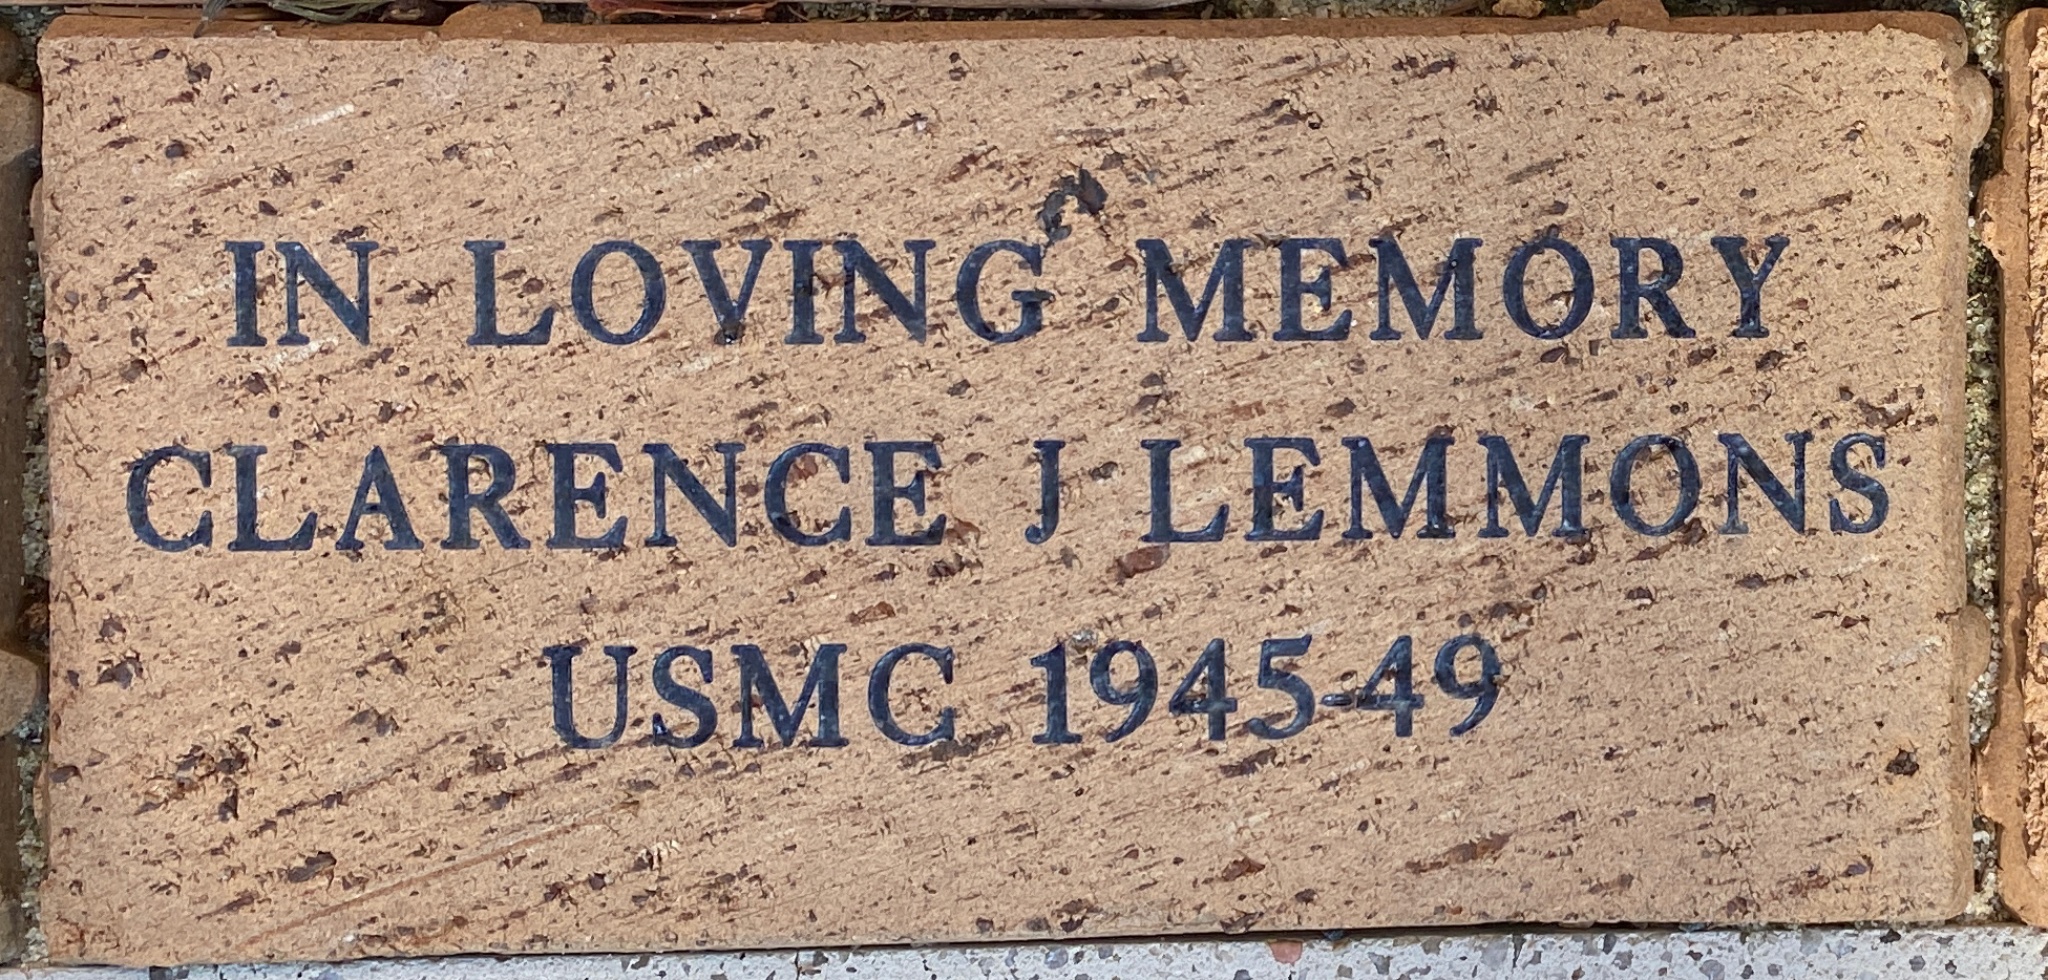 IN LOVING MEMORY  CLARENCE J LEMMONS USMC 1945-49